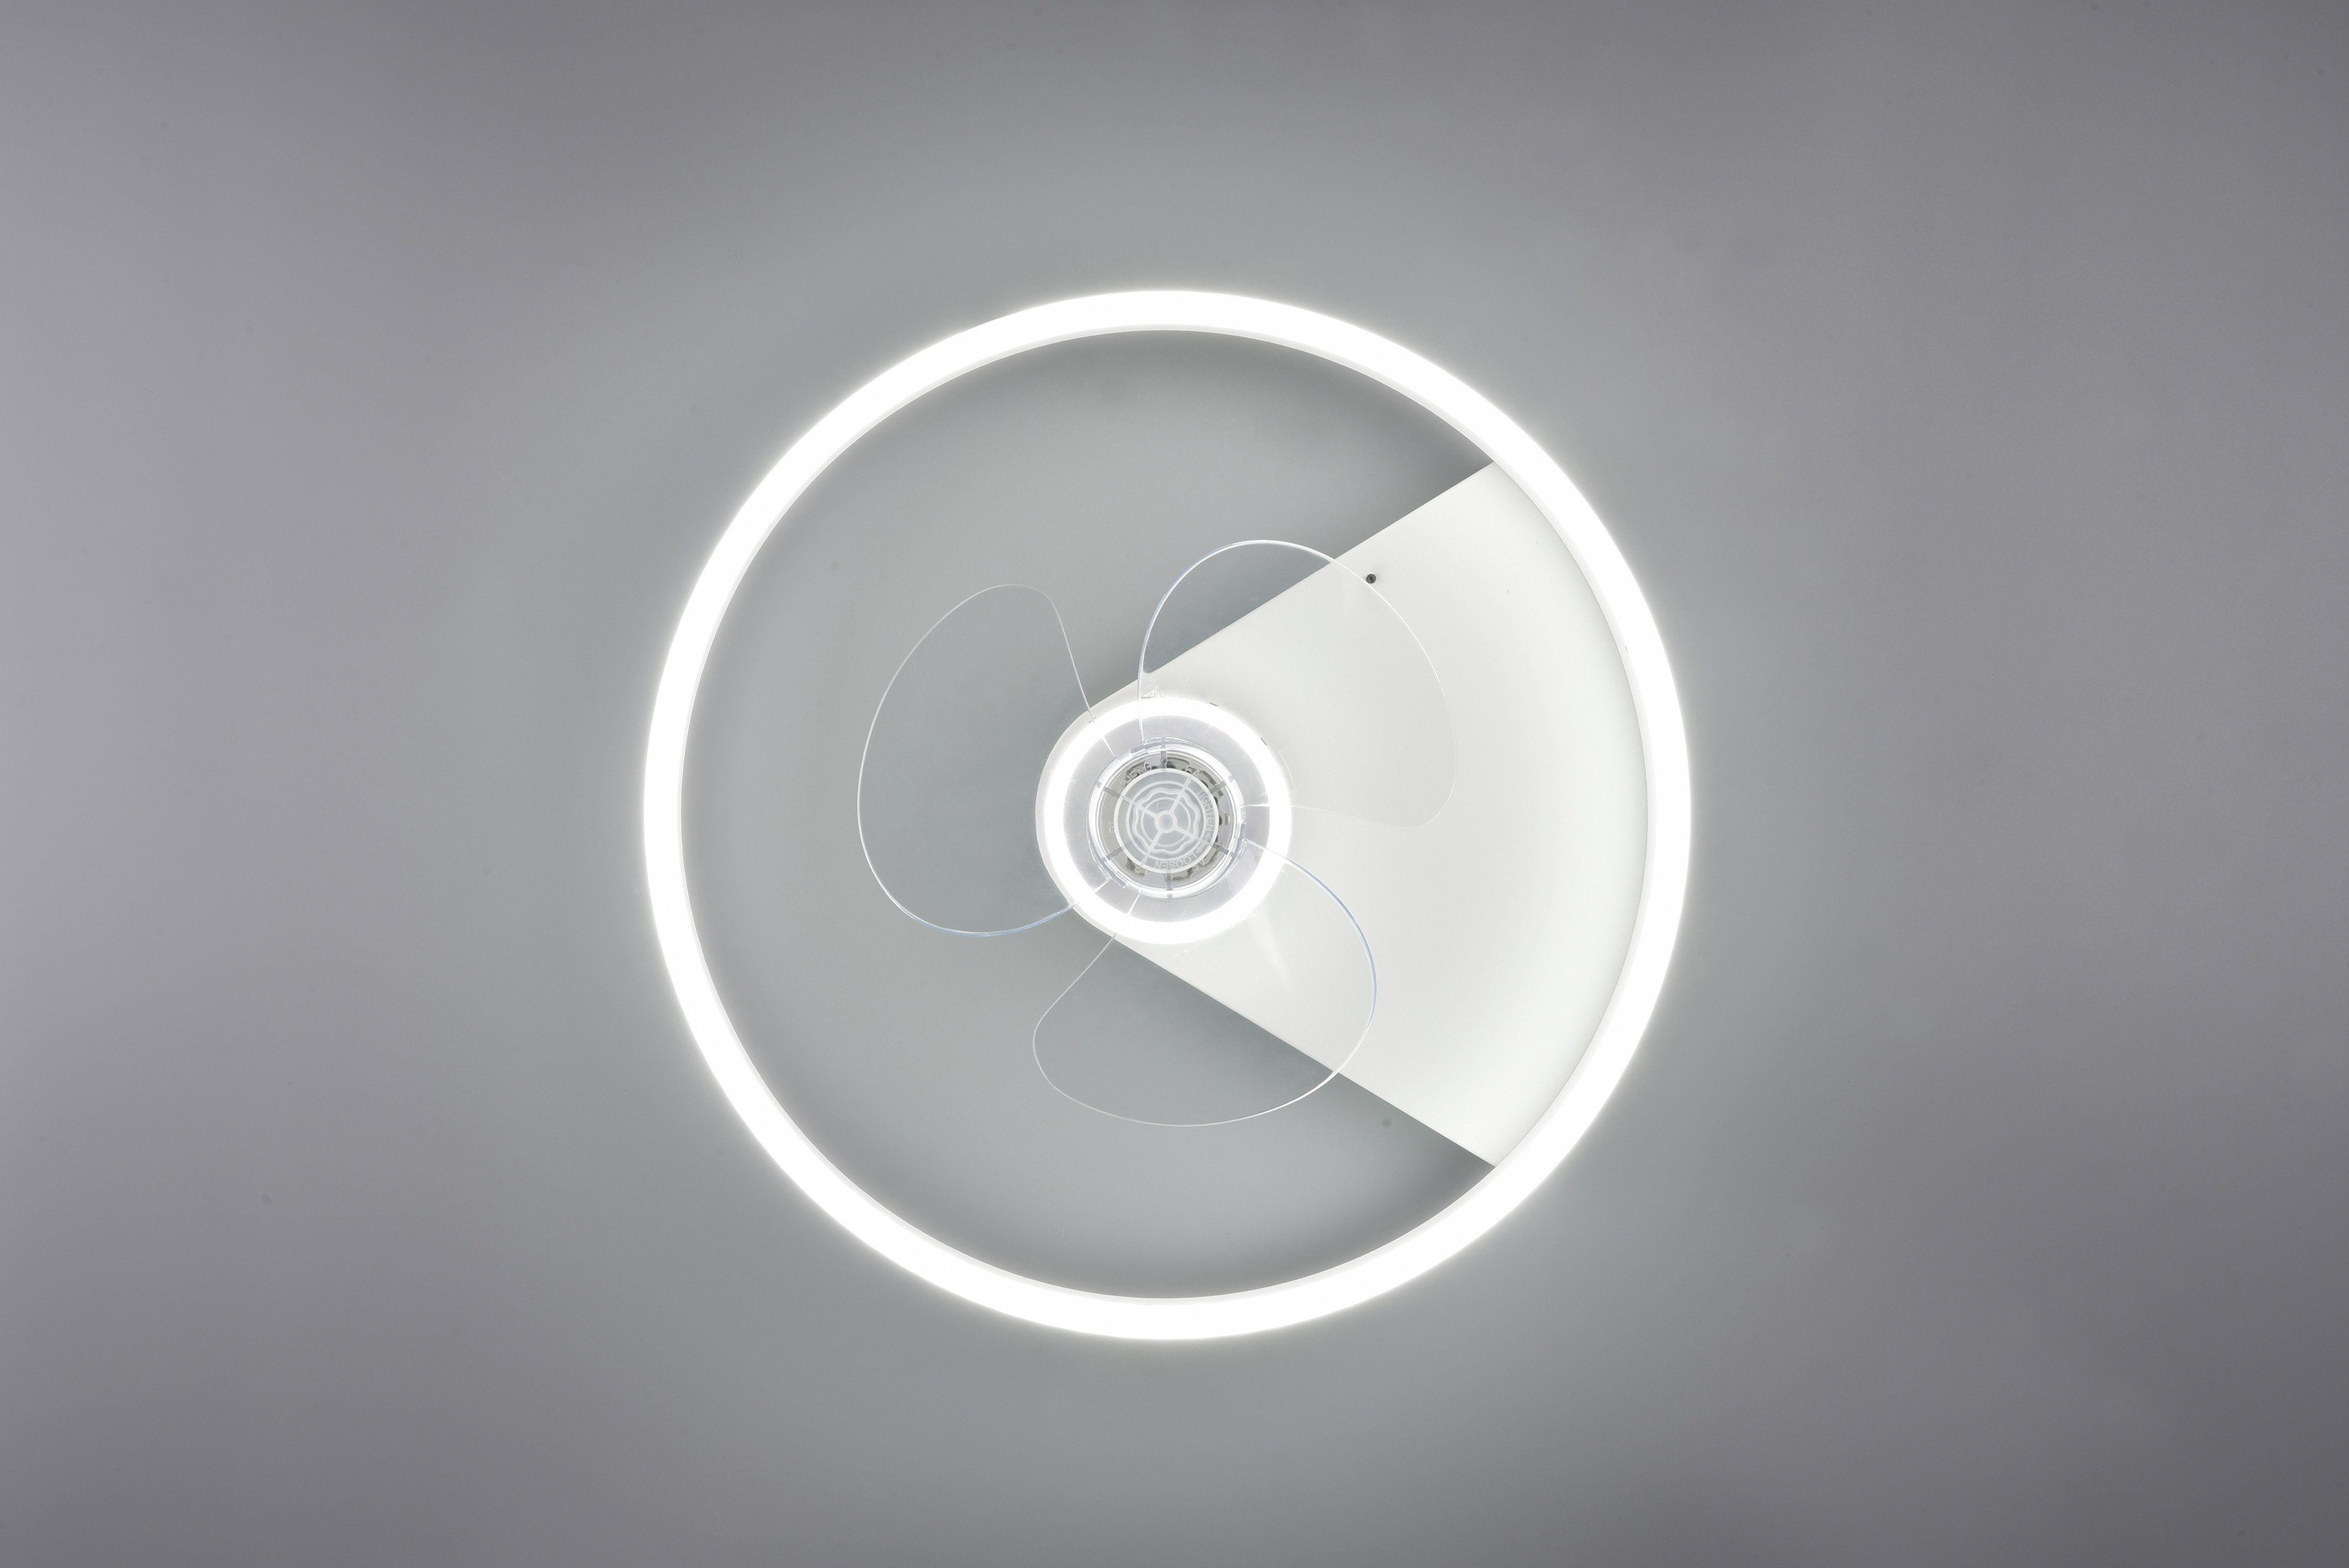 Fernbedienung., LED schaltbar fest LED integriert, Timerfunktion, Ventilatorfunktion, getrennt TRIO mit Leuchte/ Borgholm, Ventilator, Leuchten Warmweiß, Deckenleuchte Ventilator